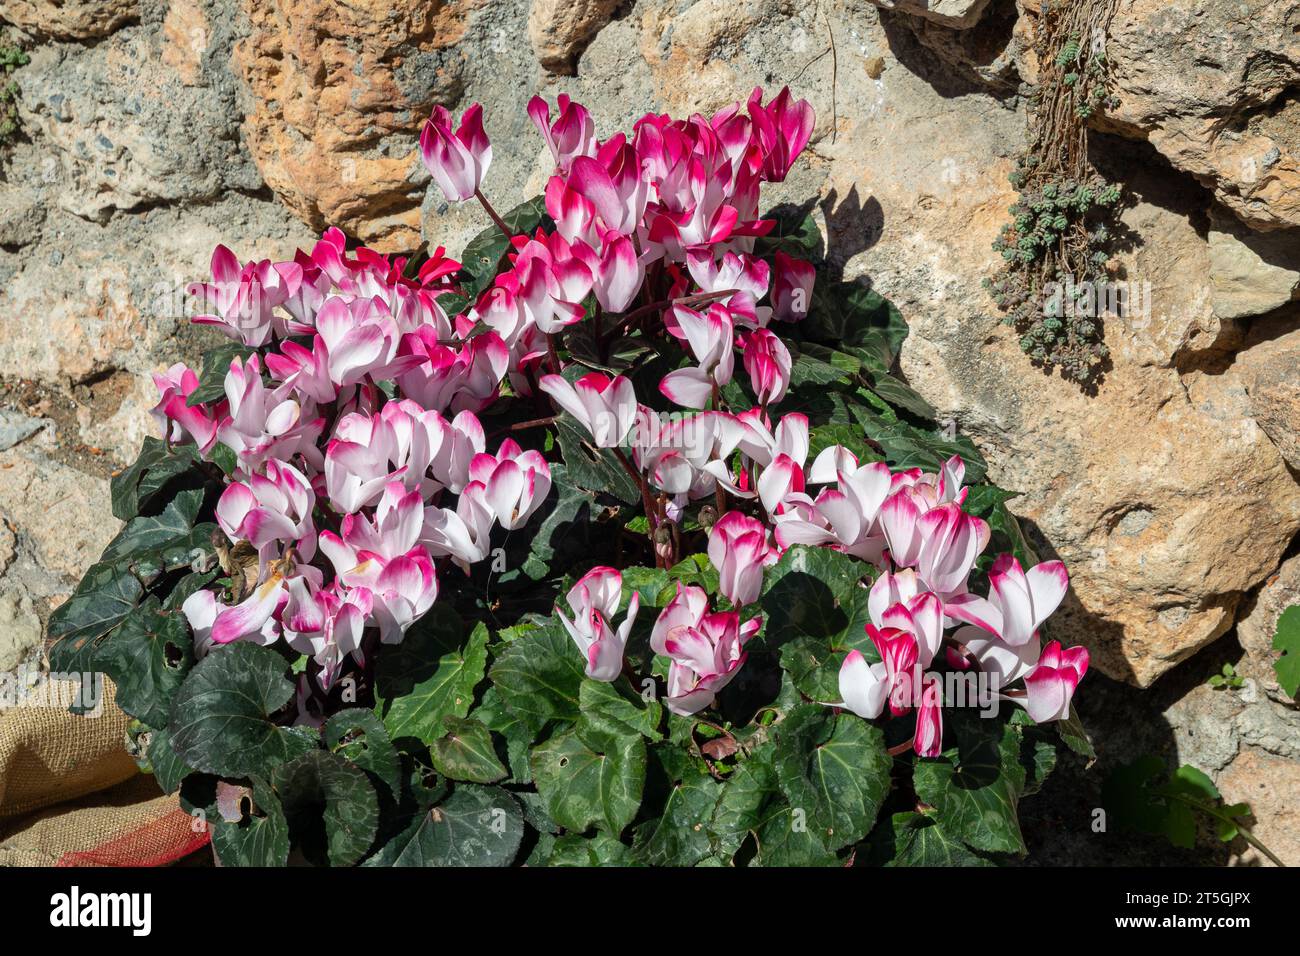 Cyclamens roses et blancs en pot, plantes à fleurs vivaces de la famille des Primulaceae, contre un vieux mur de pierre, Savone, Ligurie, Italie Banque D'Images